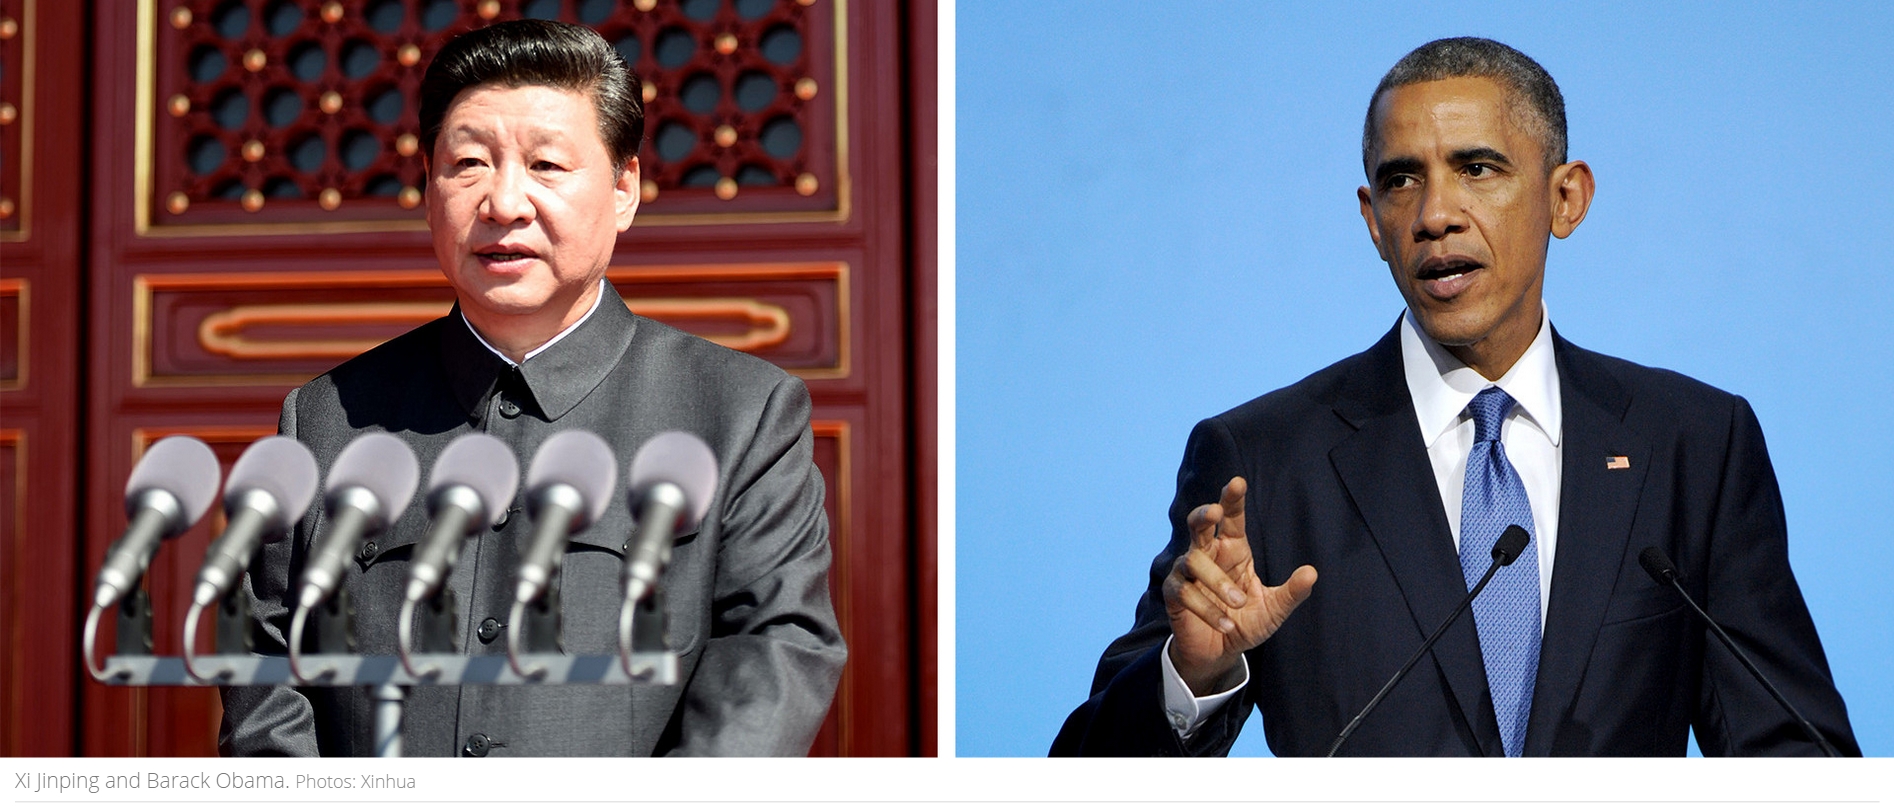 Le président chinois Xi jinping et son homologue américain Barack Obama. Copie d’écran du site South China Morning Post, le 18 septembre 2015 (Photo : Xinhua).